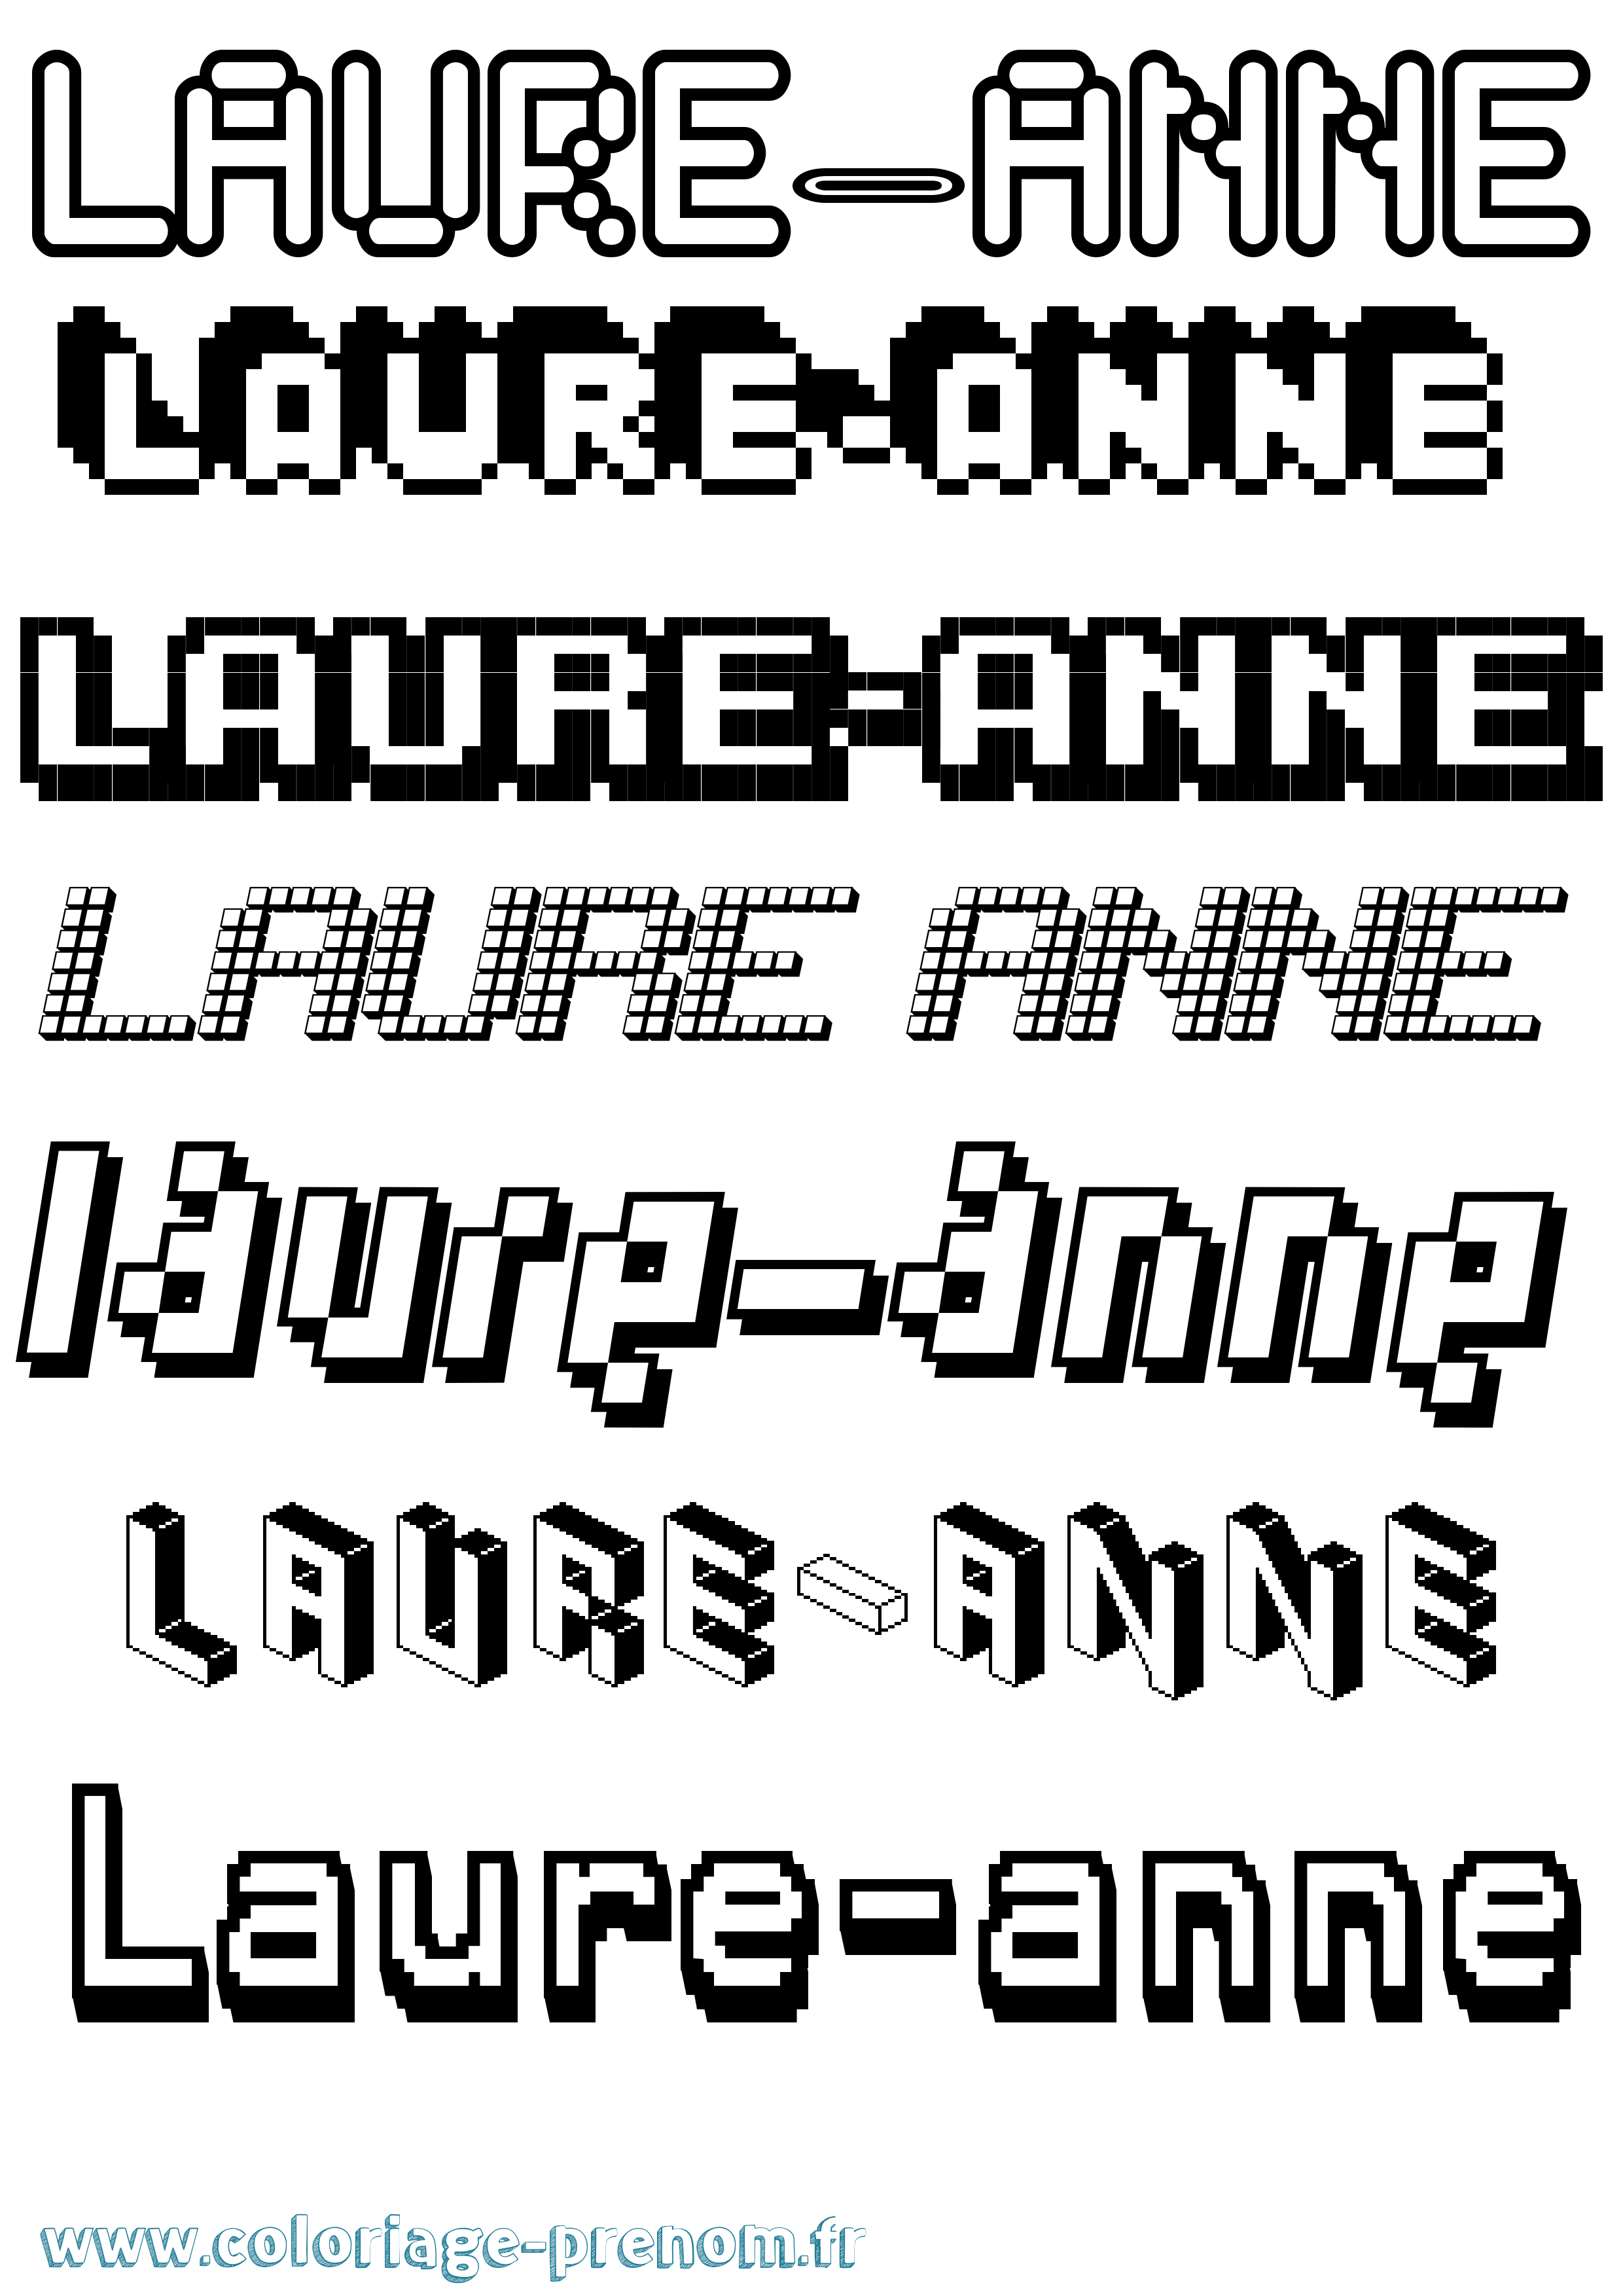 Coloriage prénom Laure-Anne Pixel